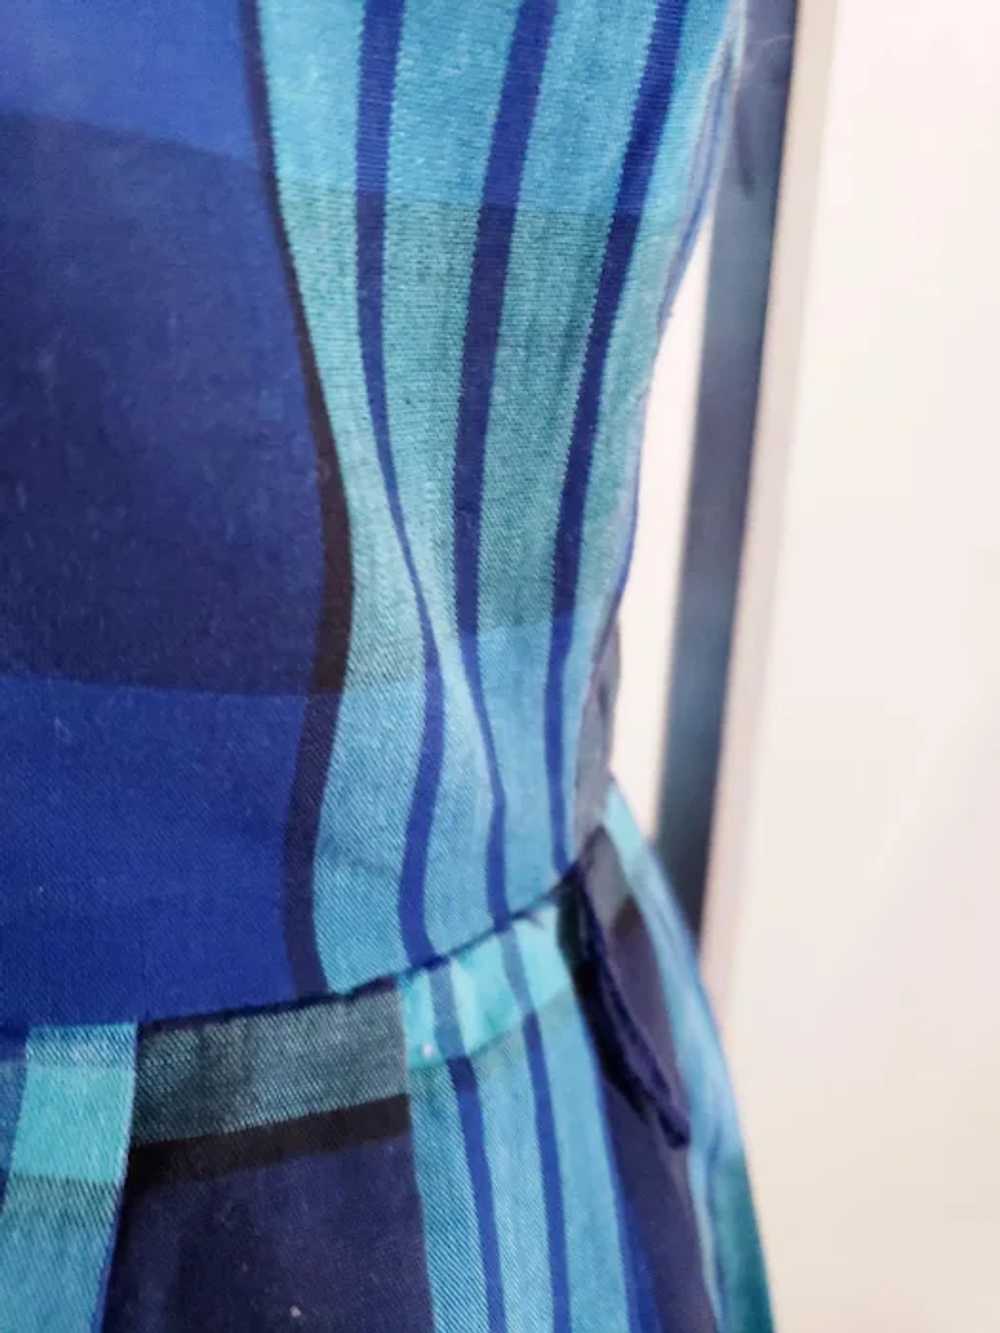 CRISP, BRIGHT Shirtwaist 1960's Dress - image 7